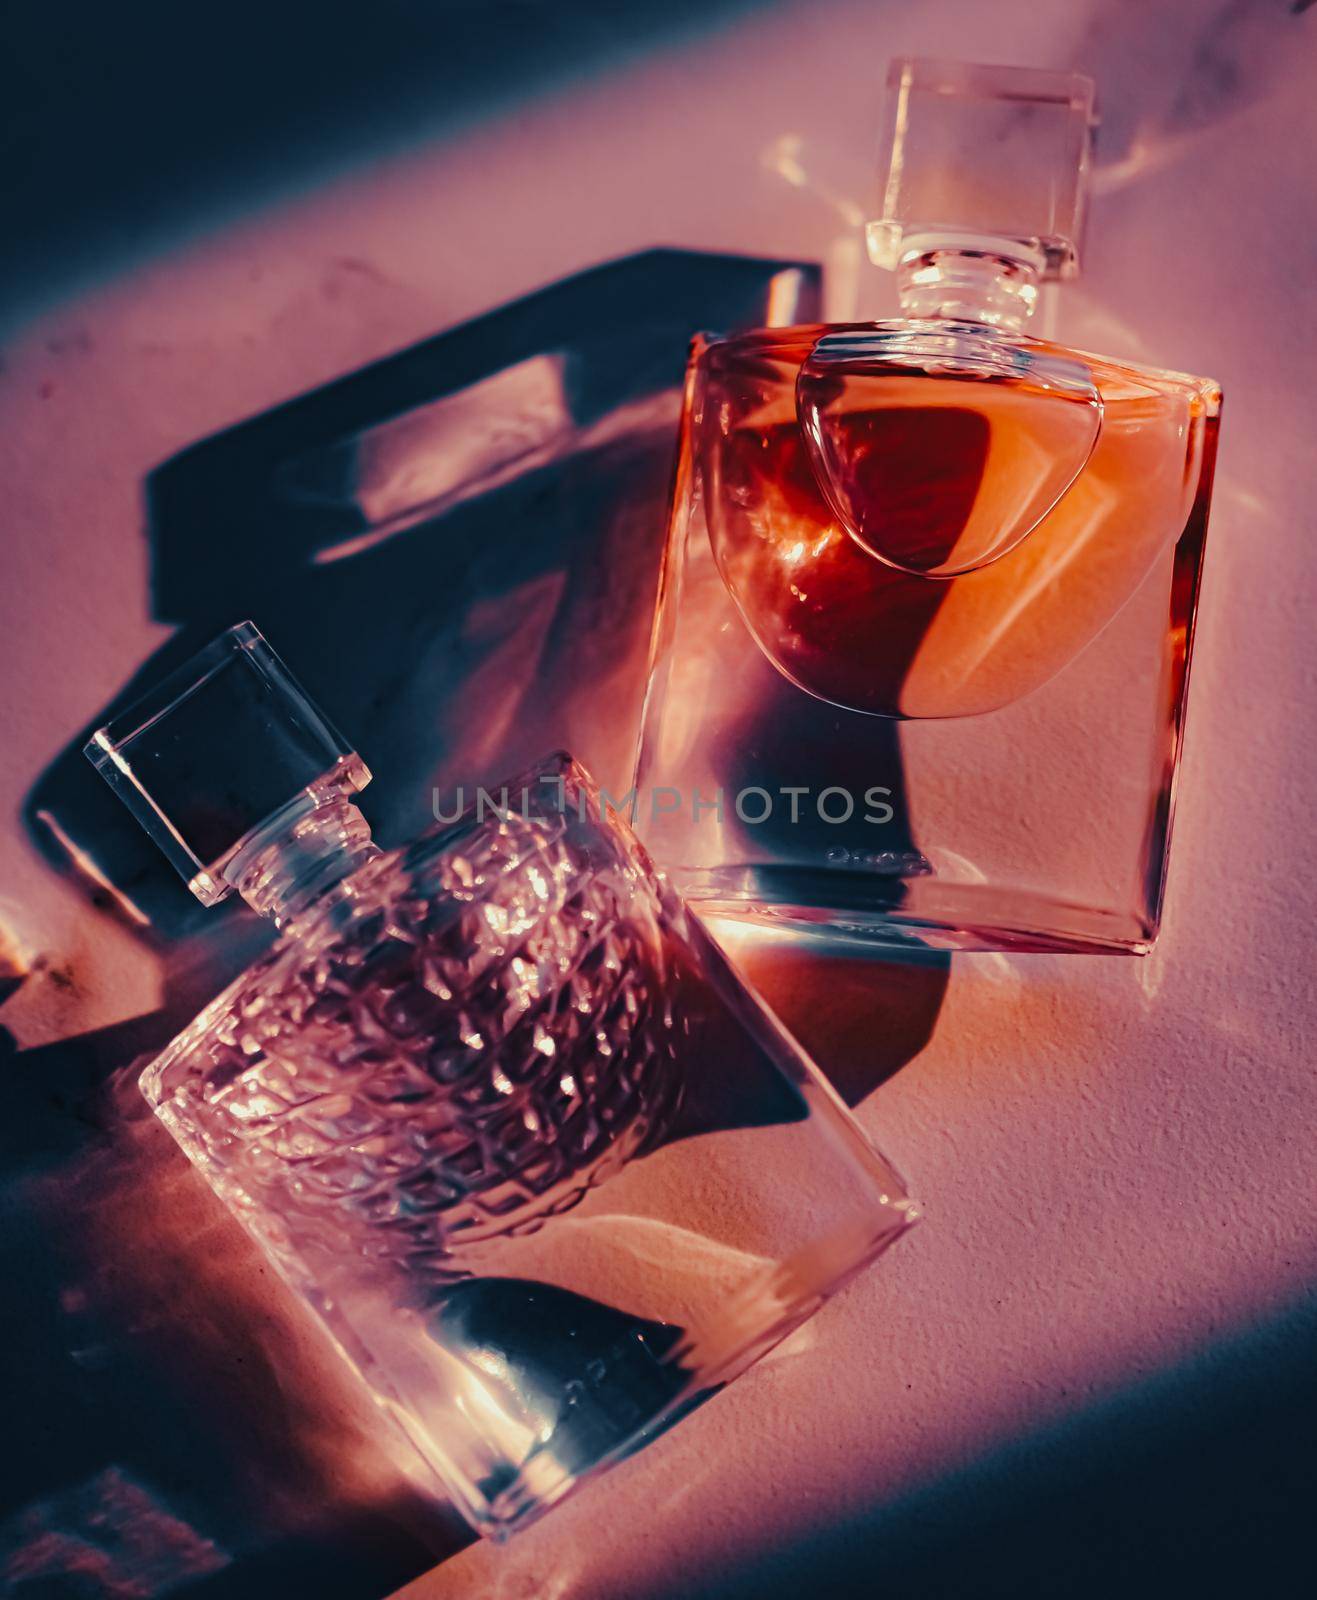 Luxury perfume bottle, beauty and cosmetics.